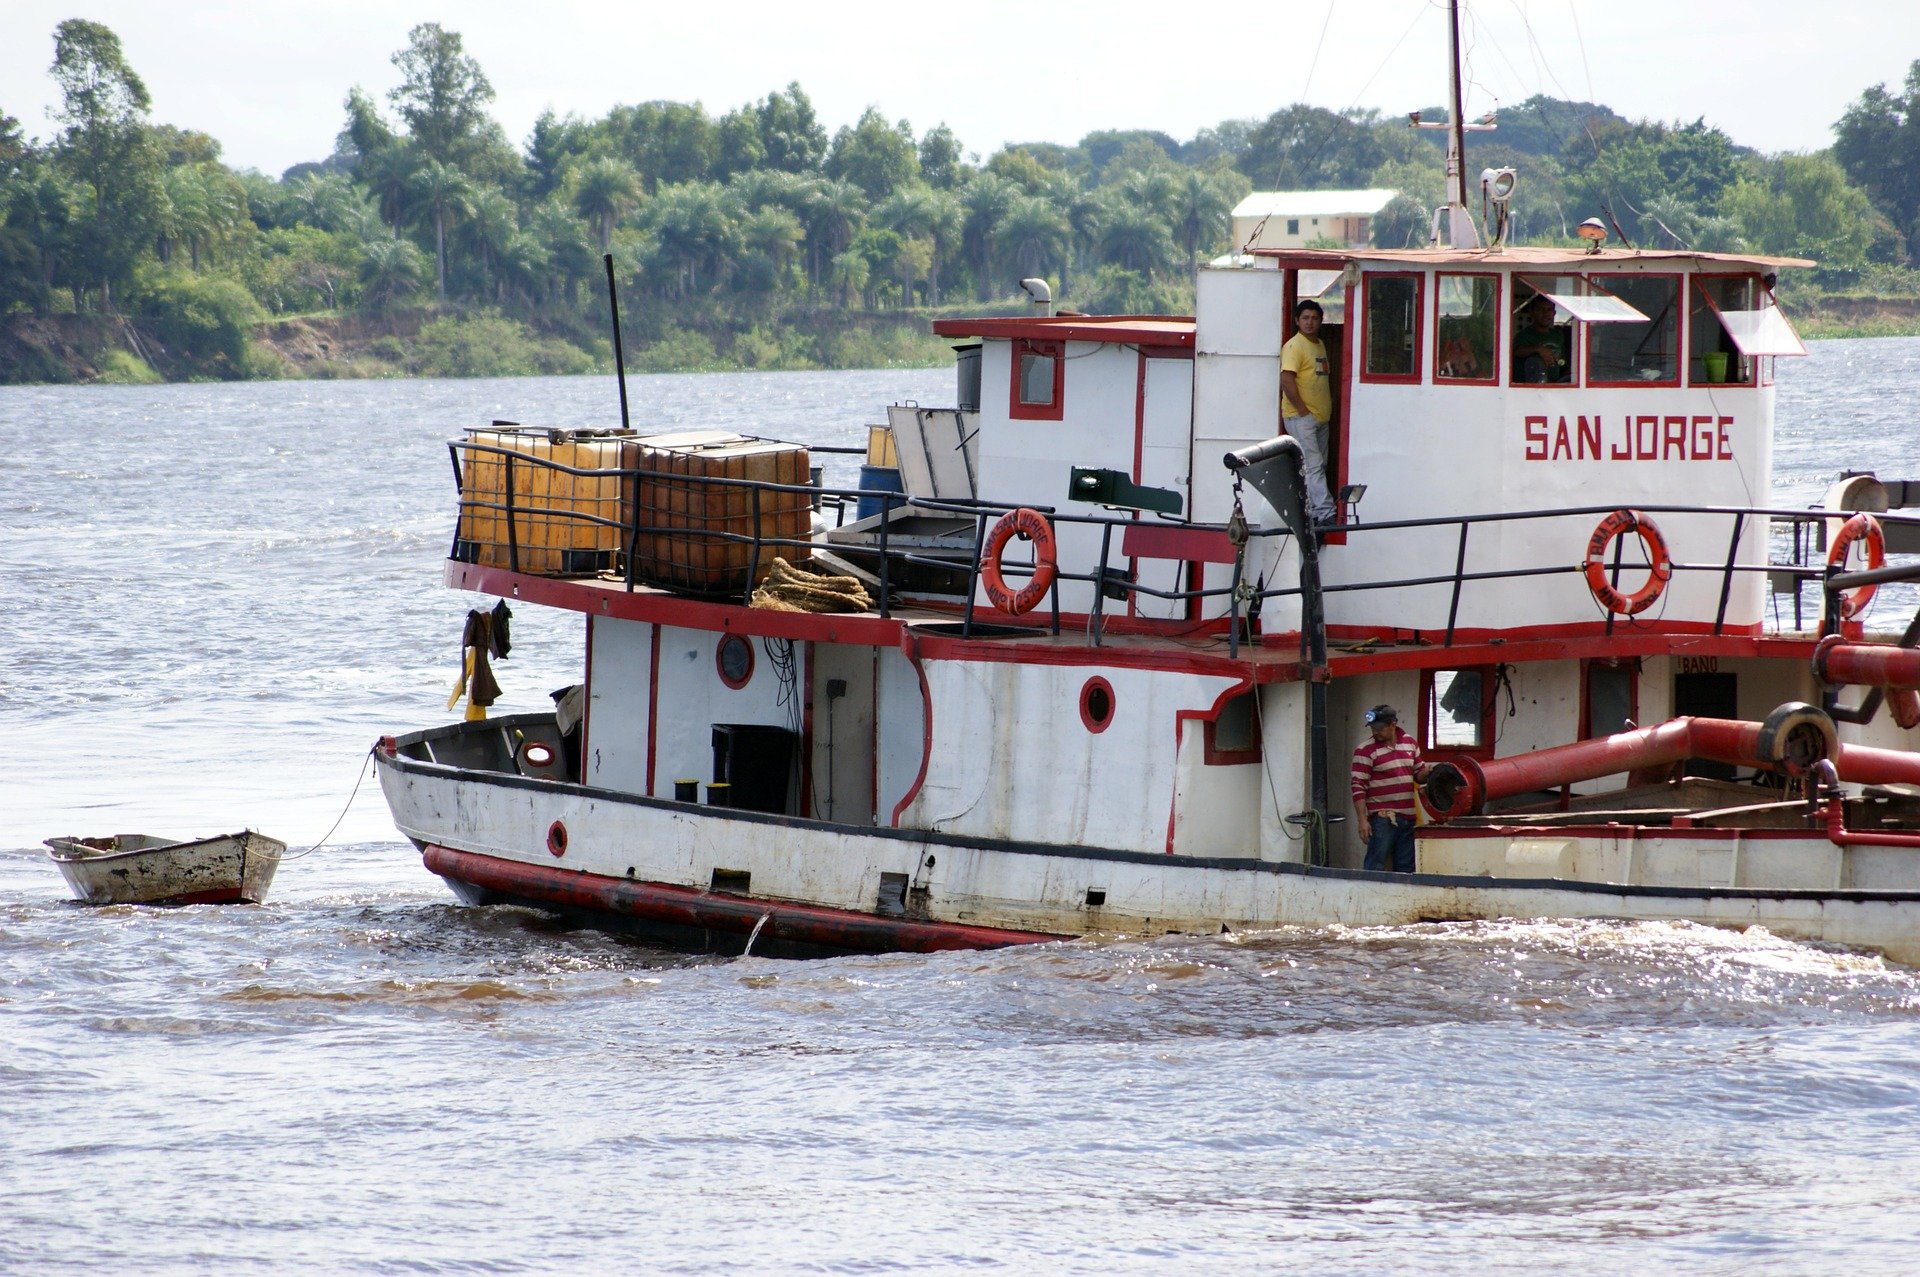 Río Paraguay sequía,rio paraguay, agua, barco, pixabay,ship-184755_1920 ,